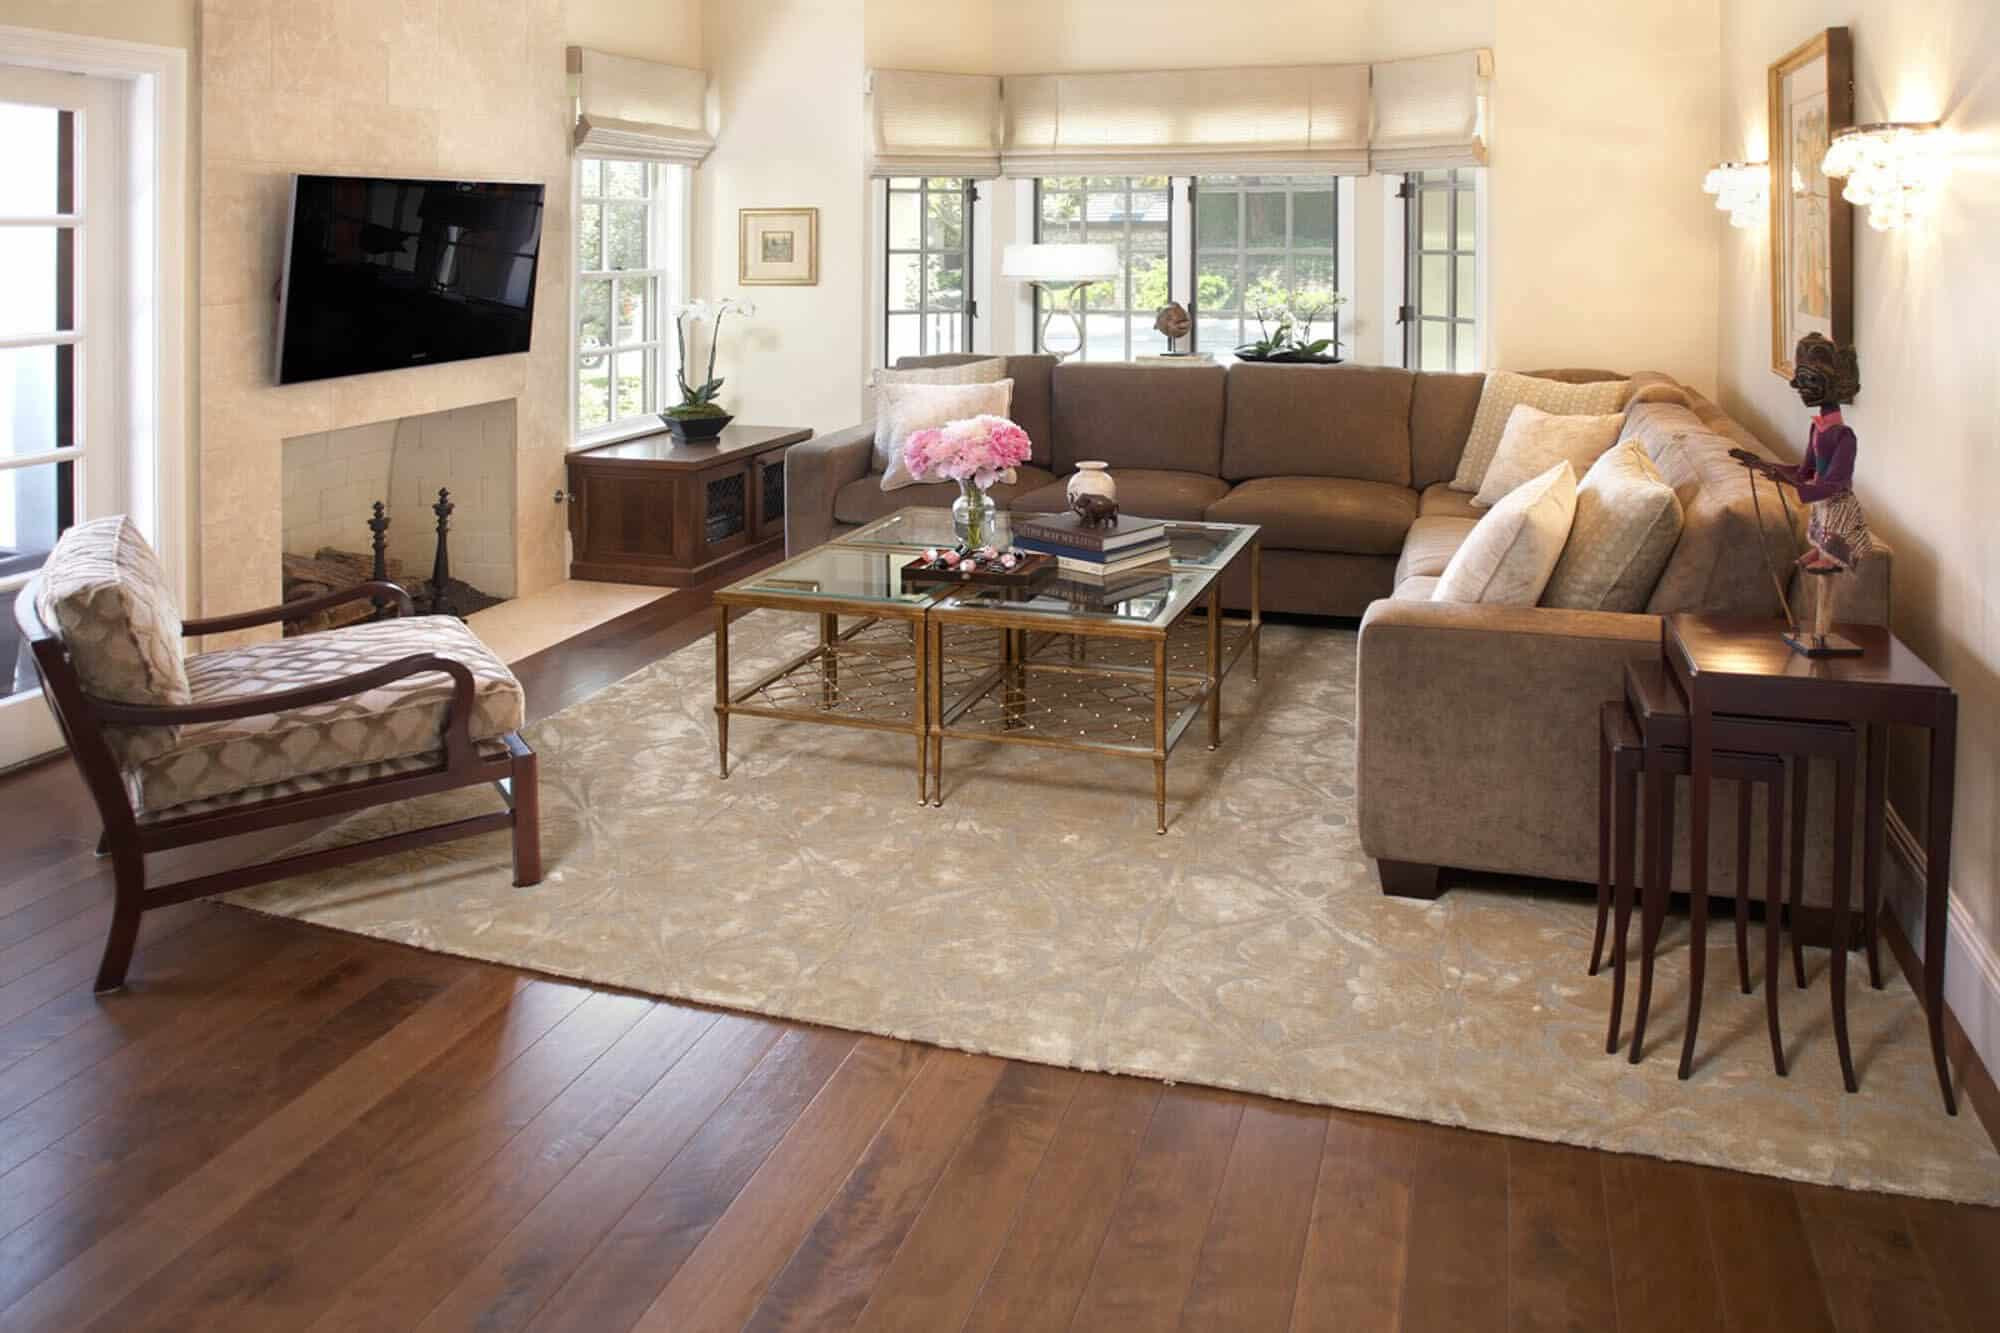 Rug On Carpet Living Room
 The Area Rug Guide — Gentleman s Gazette